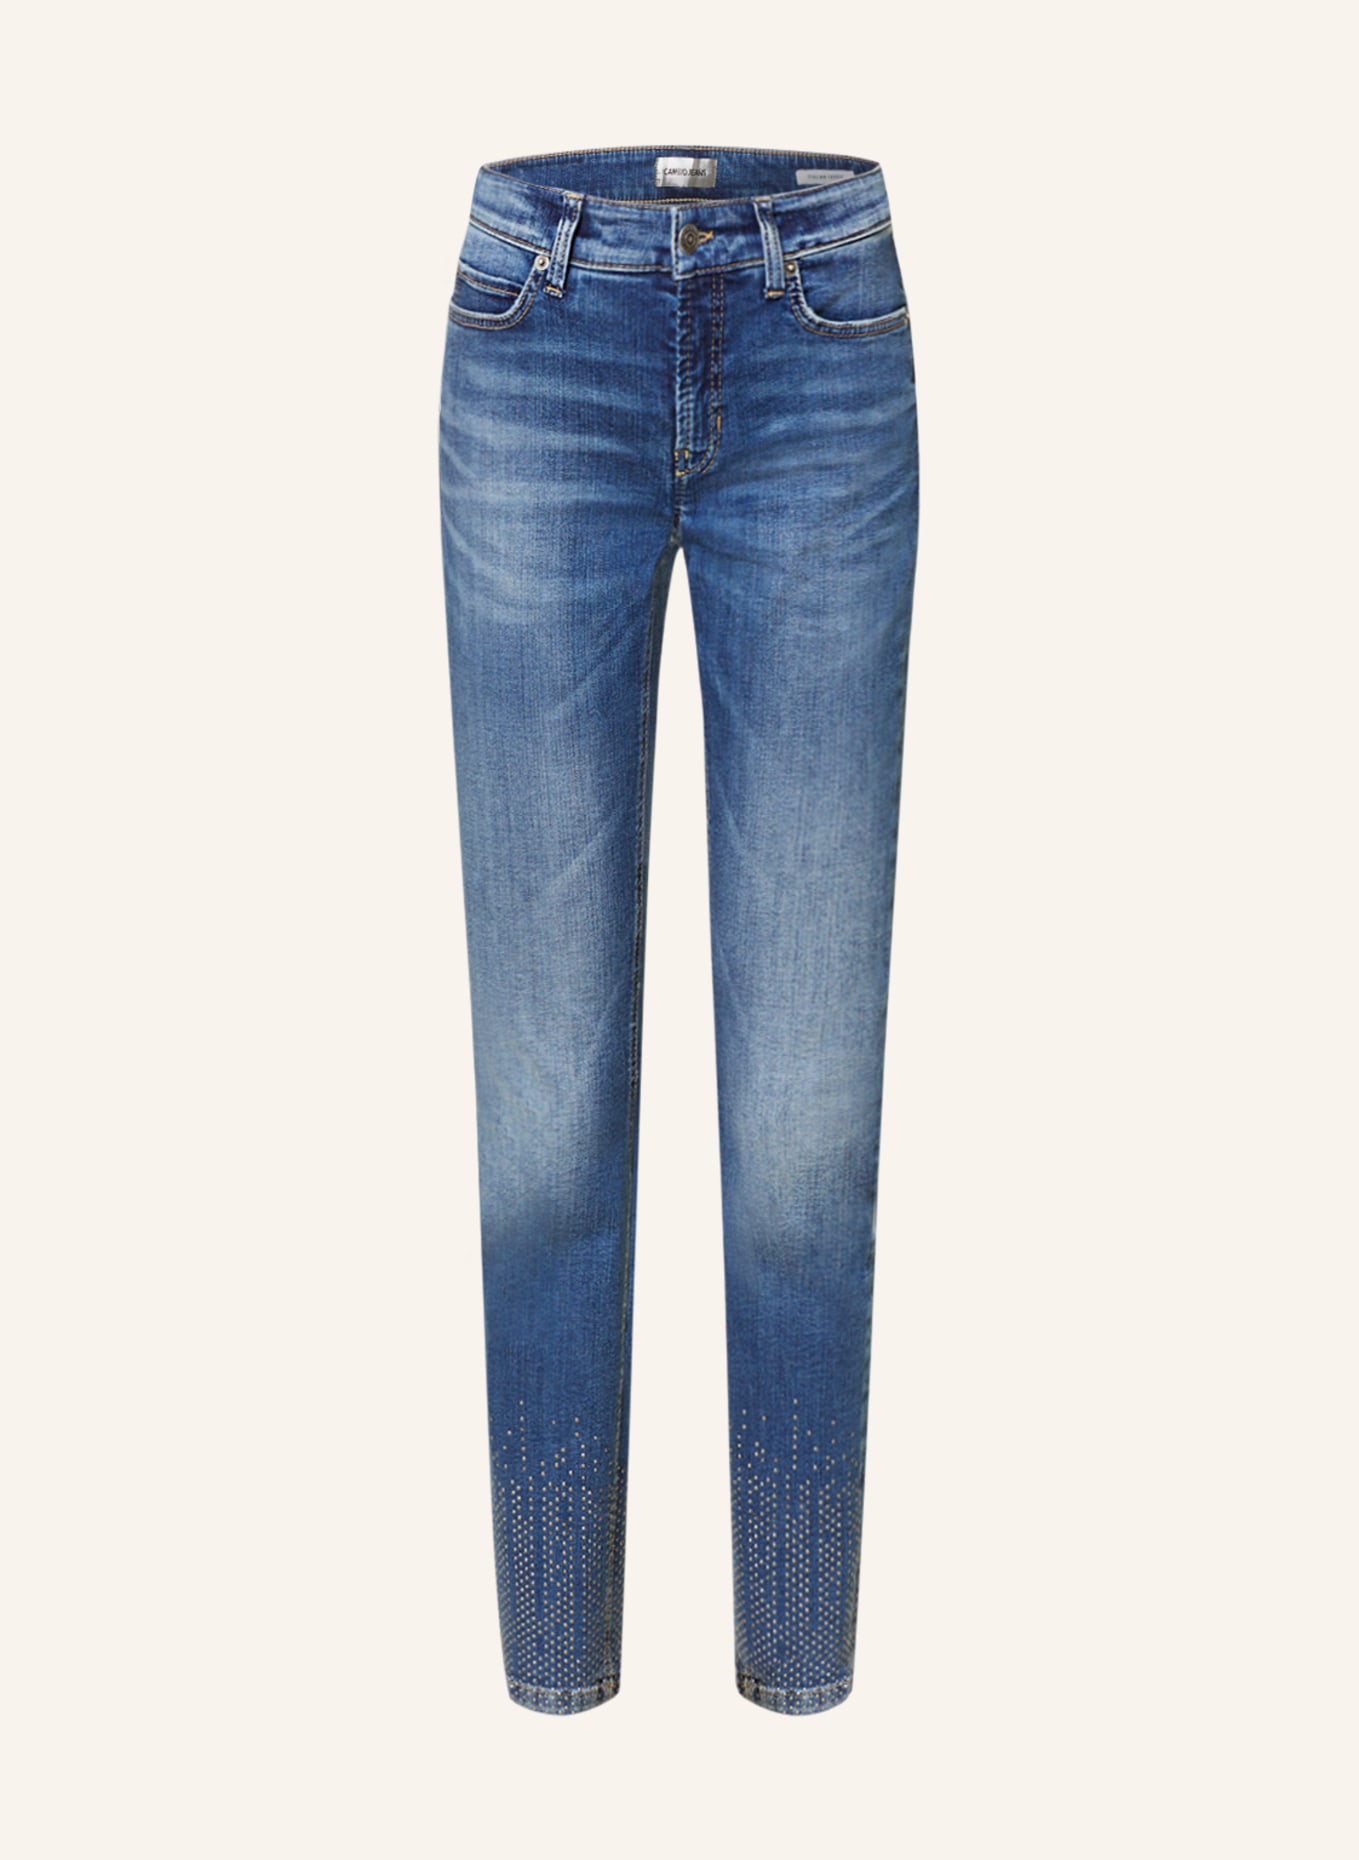 CAMBIO 7/8-Jeans PARIS mit Schmucksteinen, Farbe: 5130 authentic splinted (Bild 1)